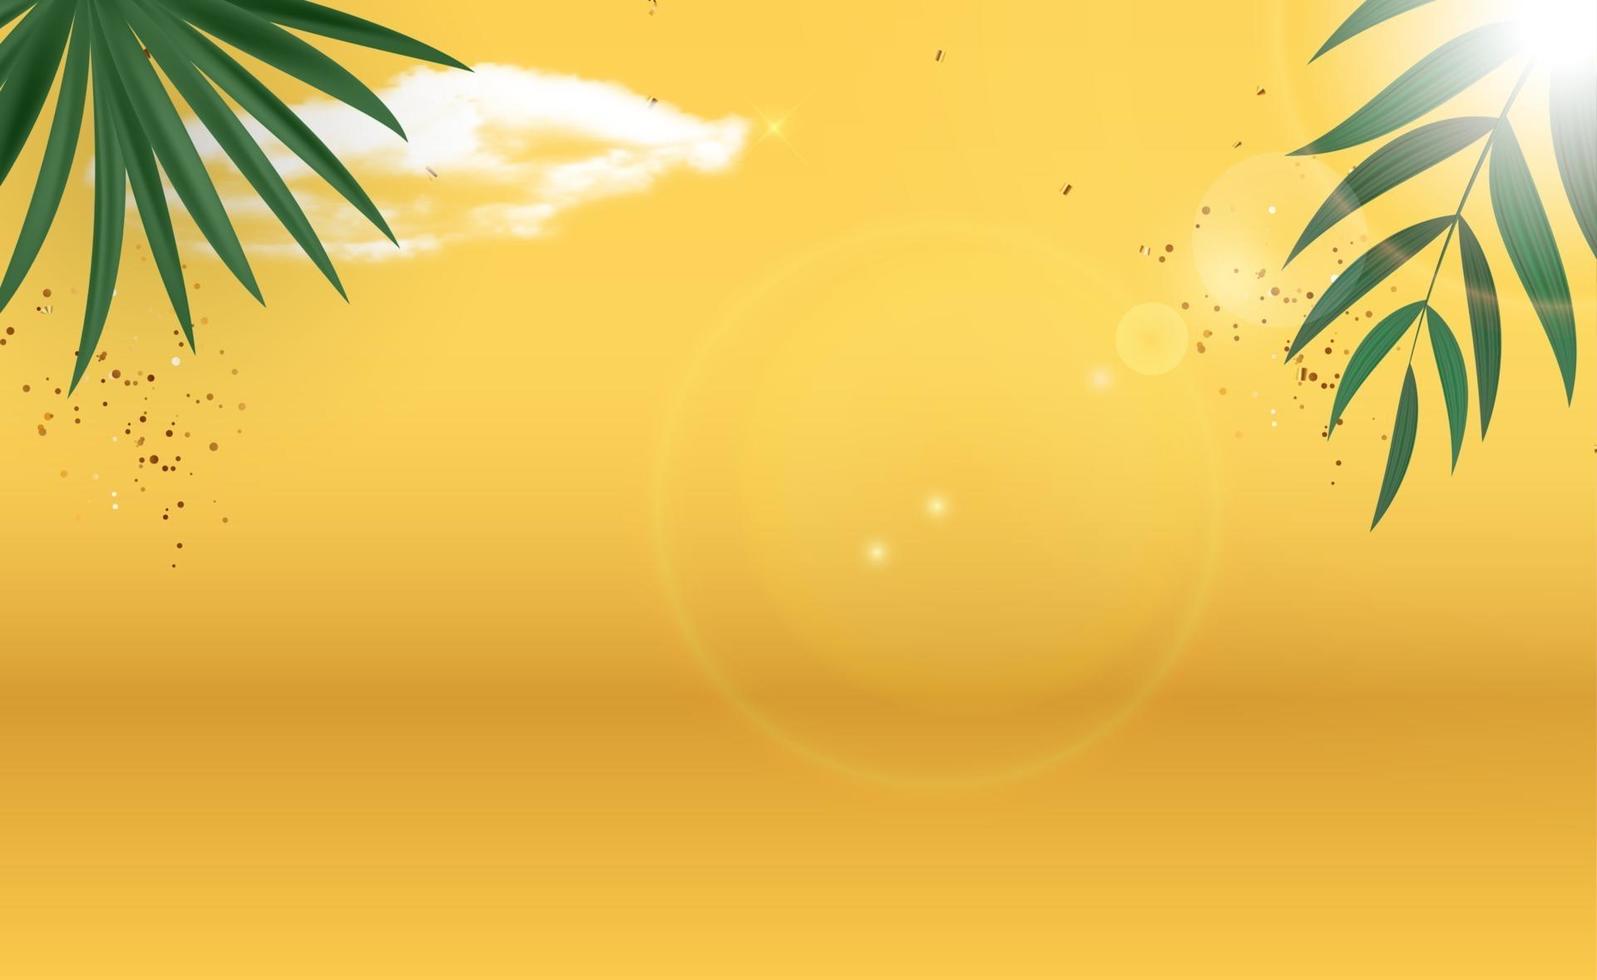 hojas de palmera abstracta fondo amarillo de verano. ilustración vectorial vector